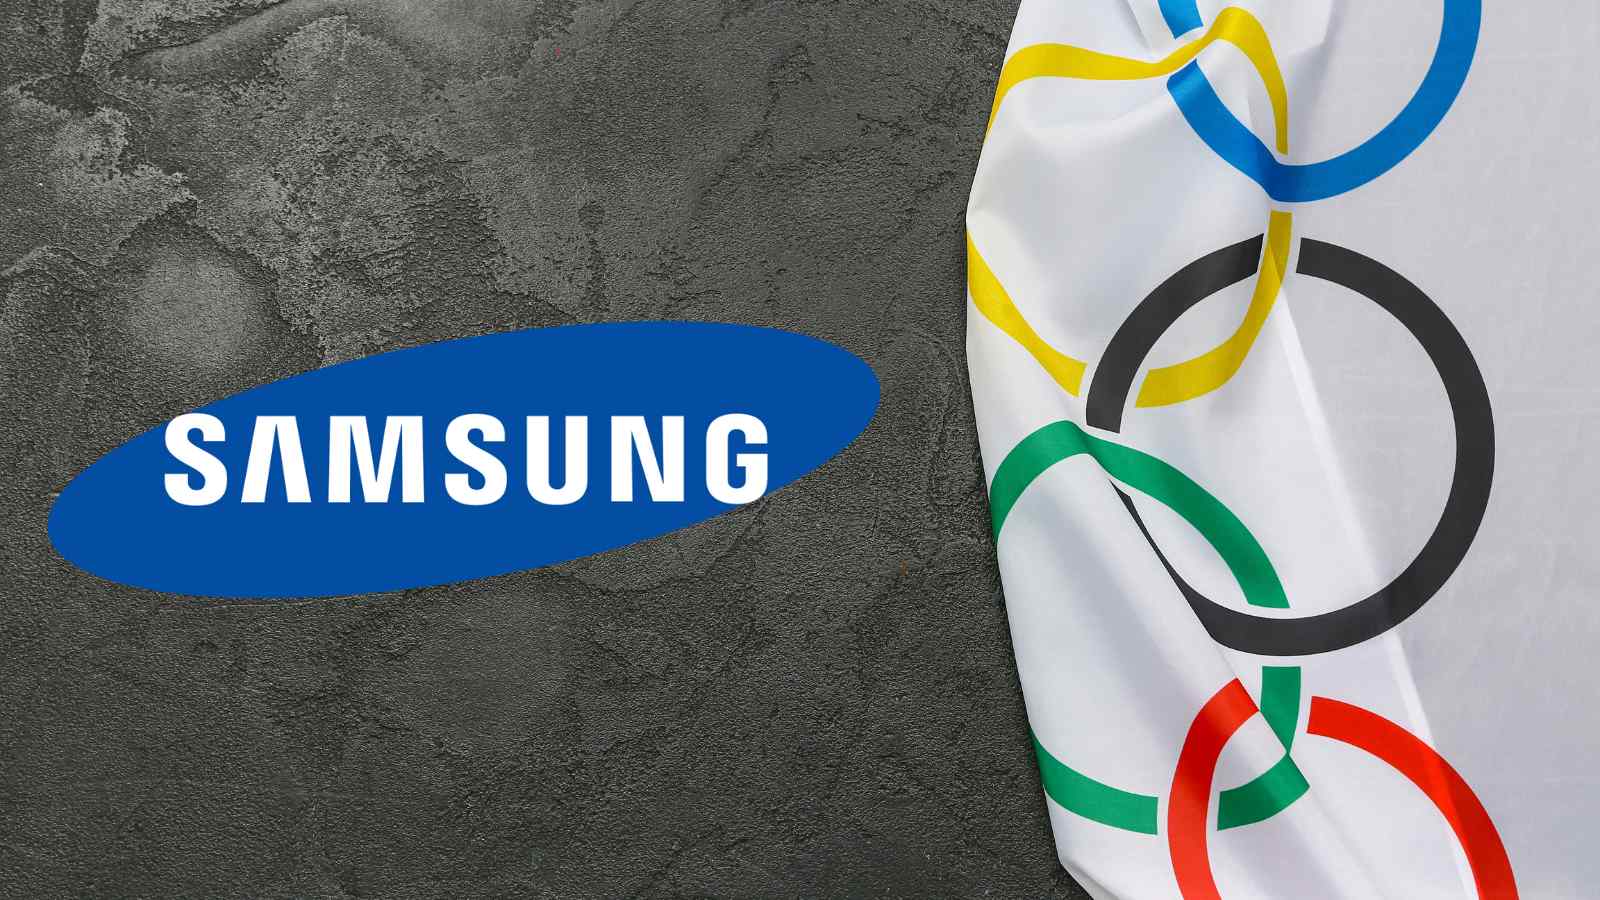 Samsung approfitta delle Olimpiadi di Parigi e le rende la sua piattaforma di lancio per i nuovi prodotti, testando in live i nuovi Galaxy.